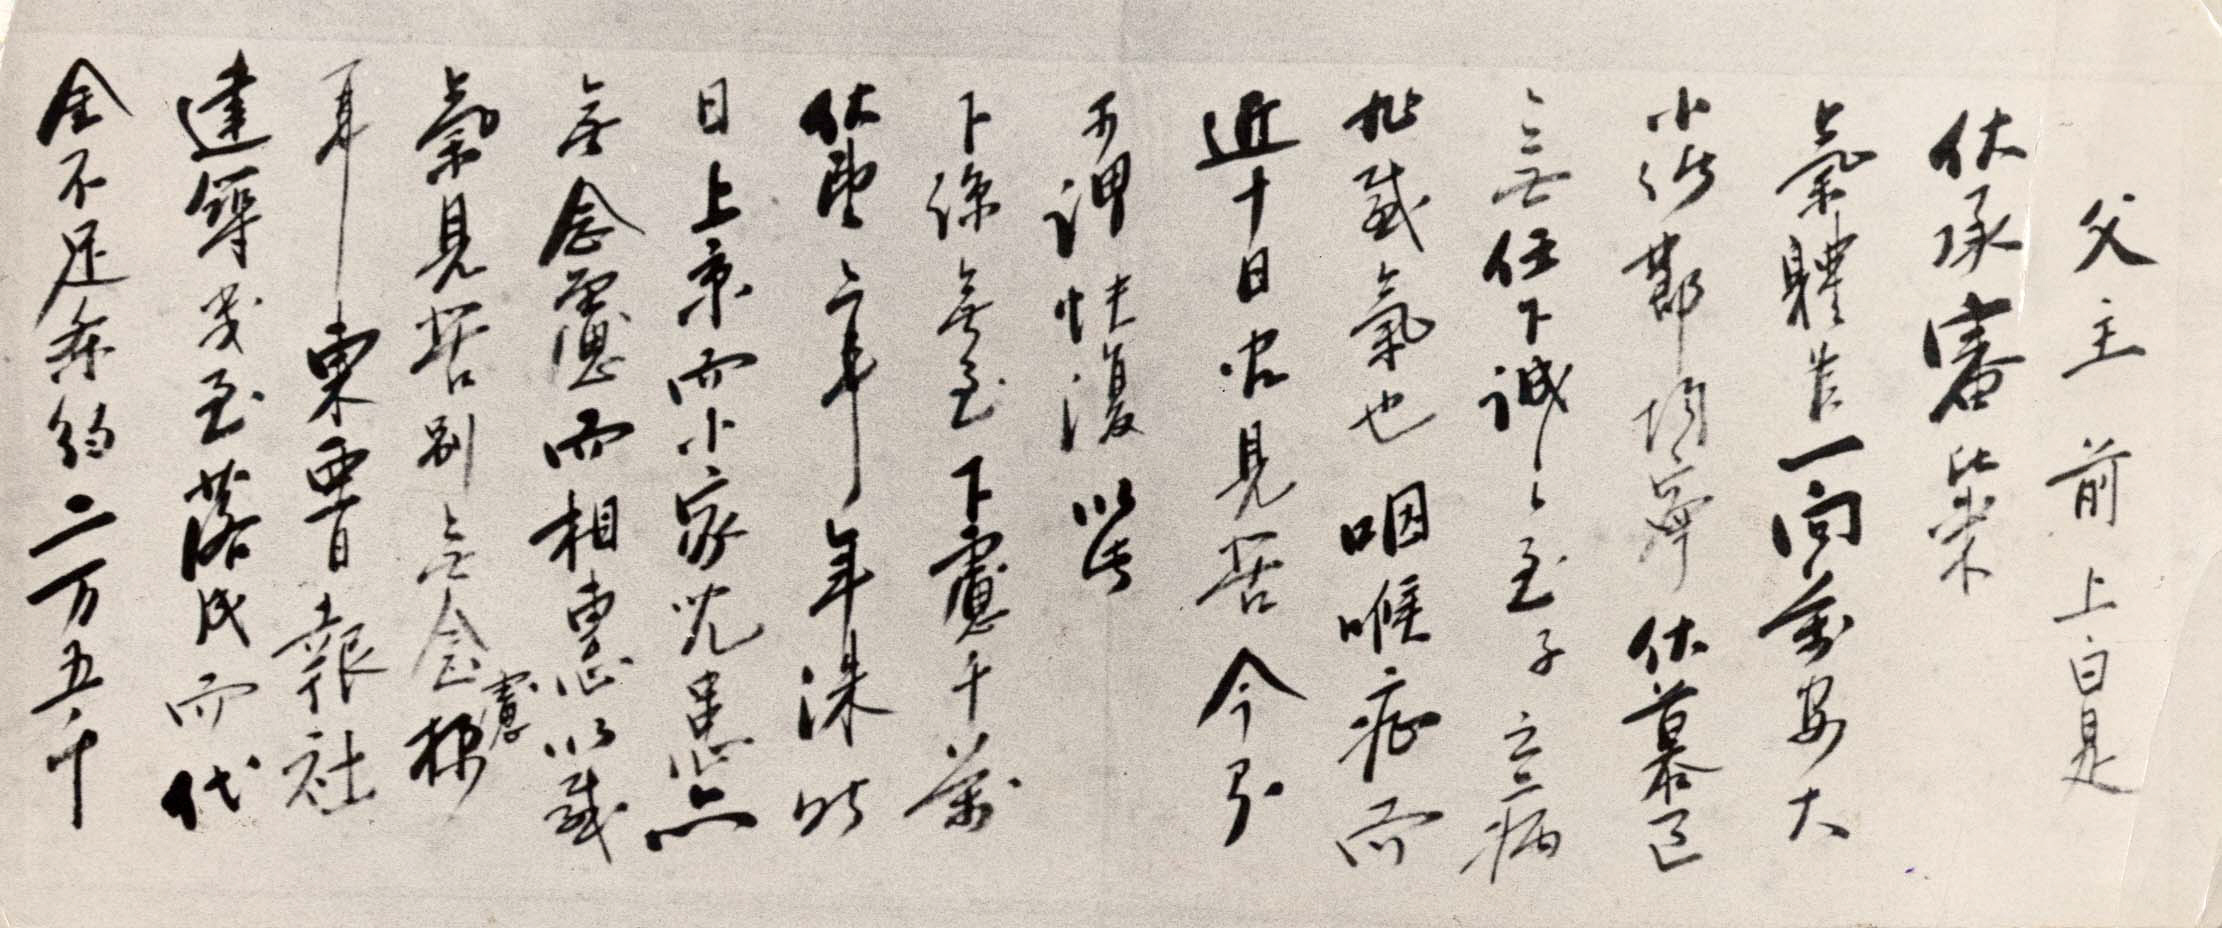 1926년 동아일보 화동사옥 이전을 위해 양부에게 자금요청한 편지